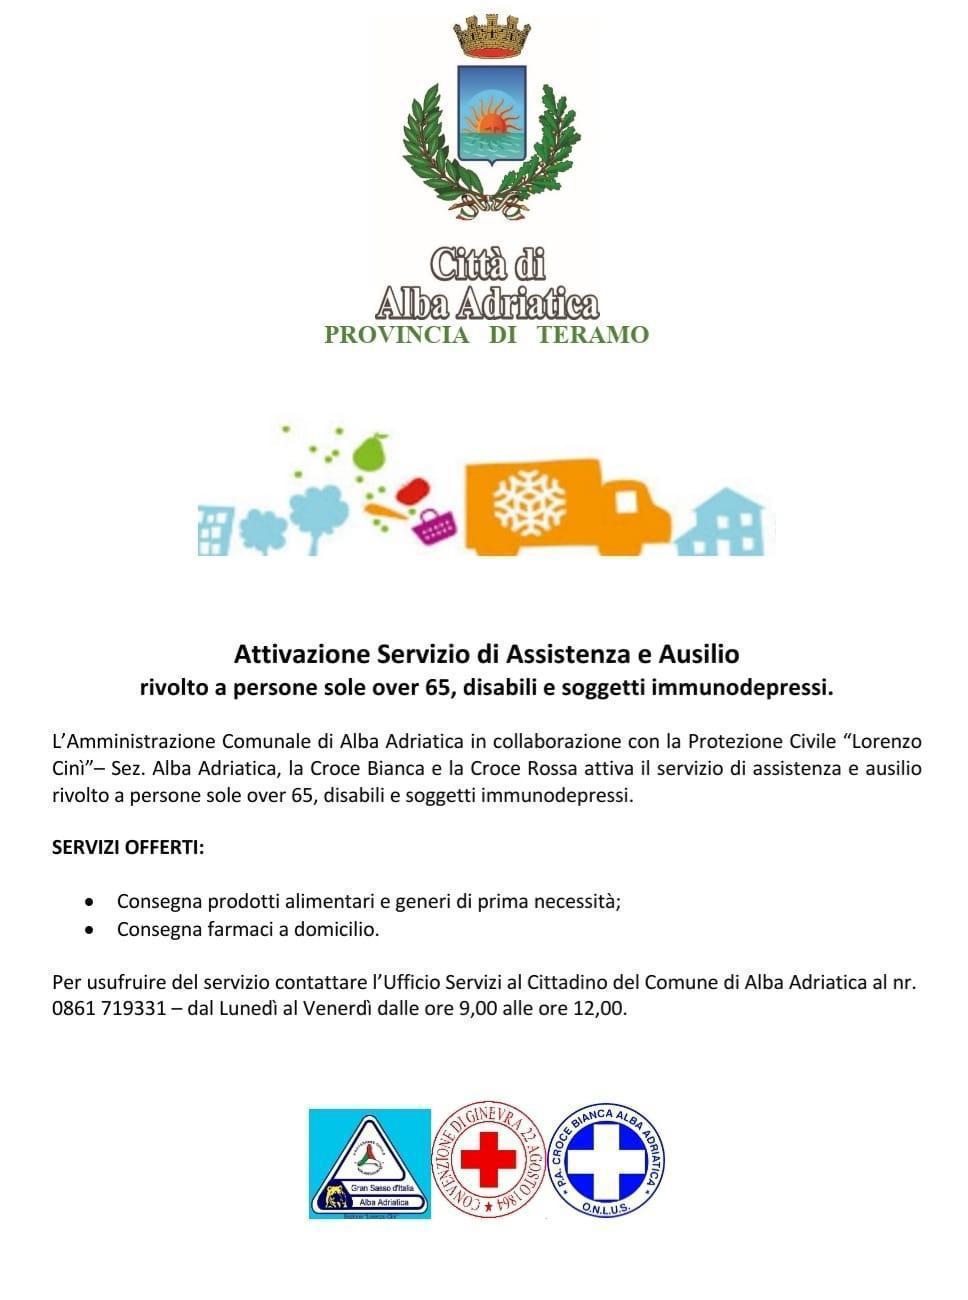 Attivazione Servizio di Assistenza e ausilio Comune di Alba Adriatica